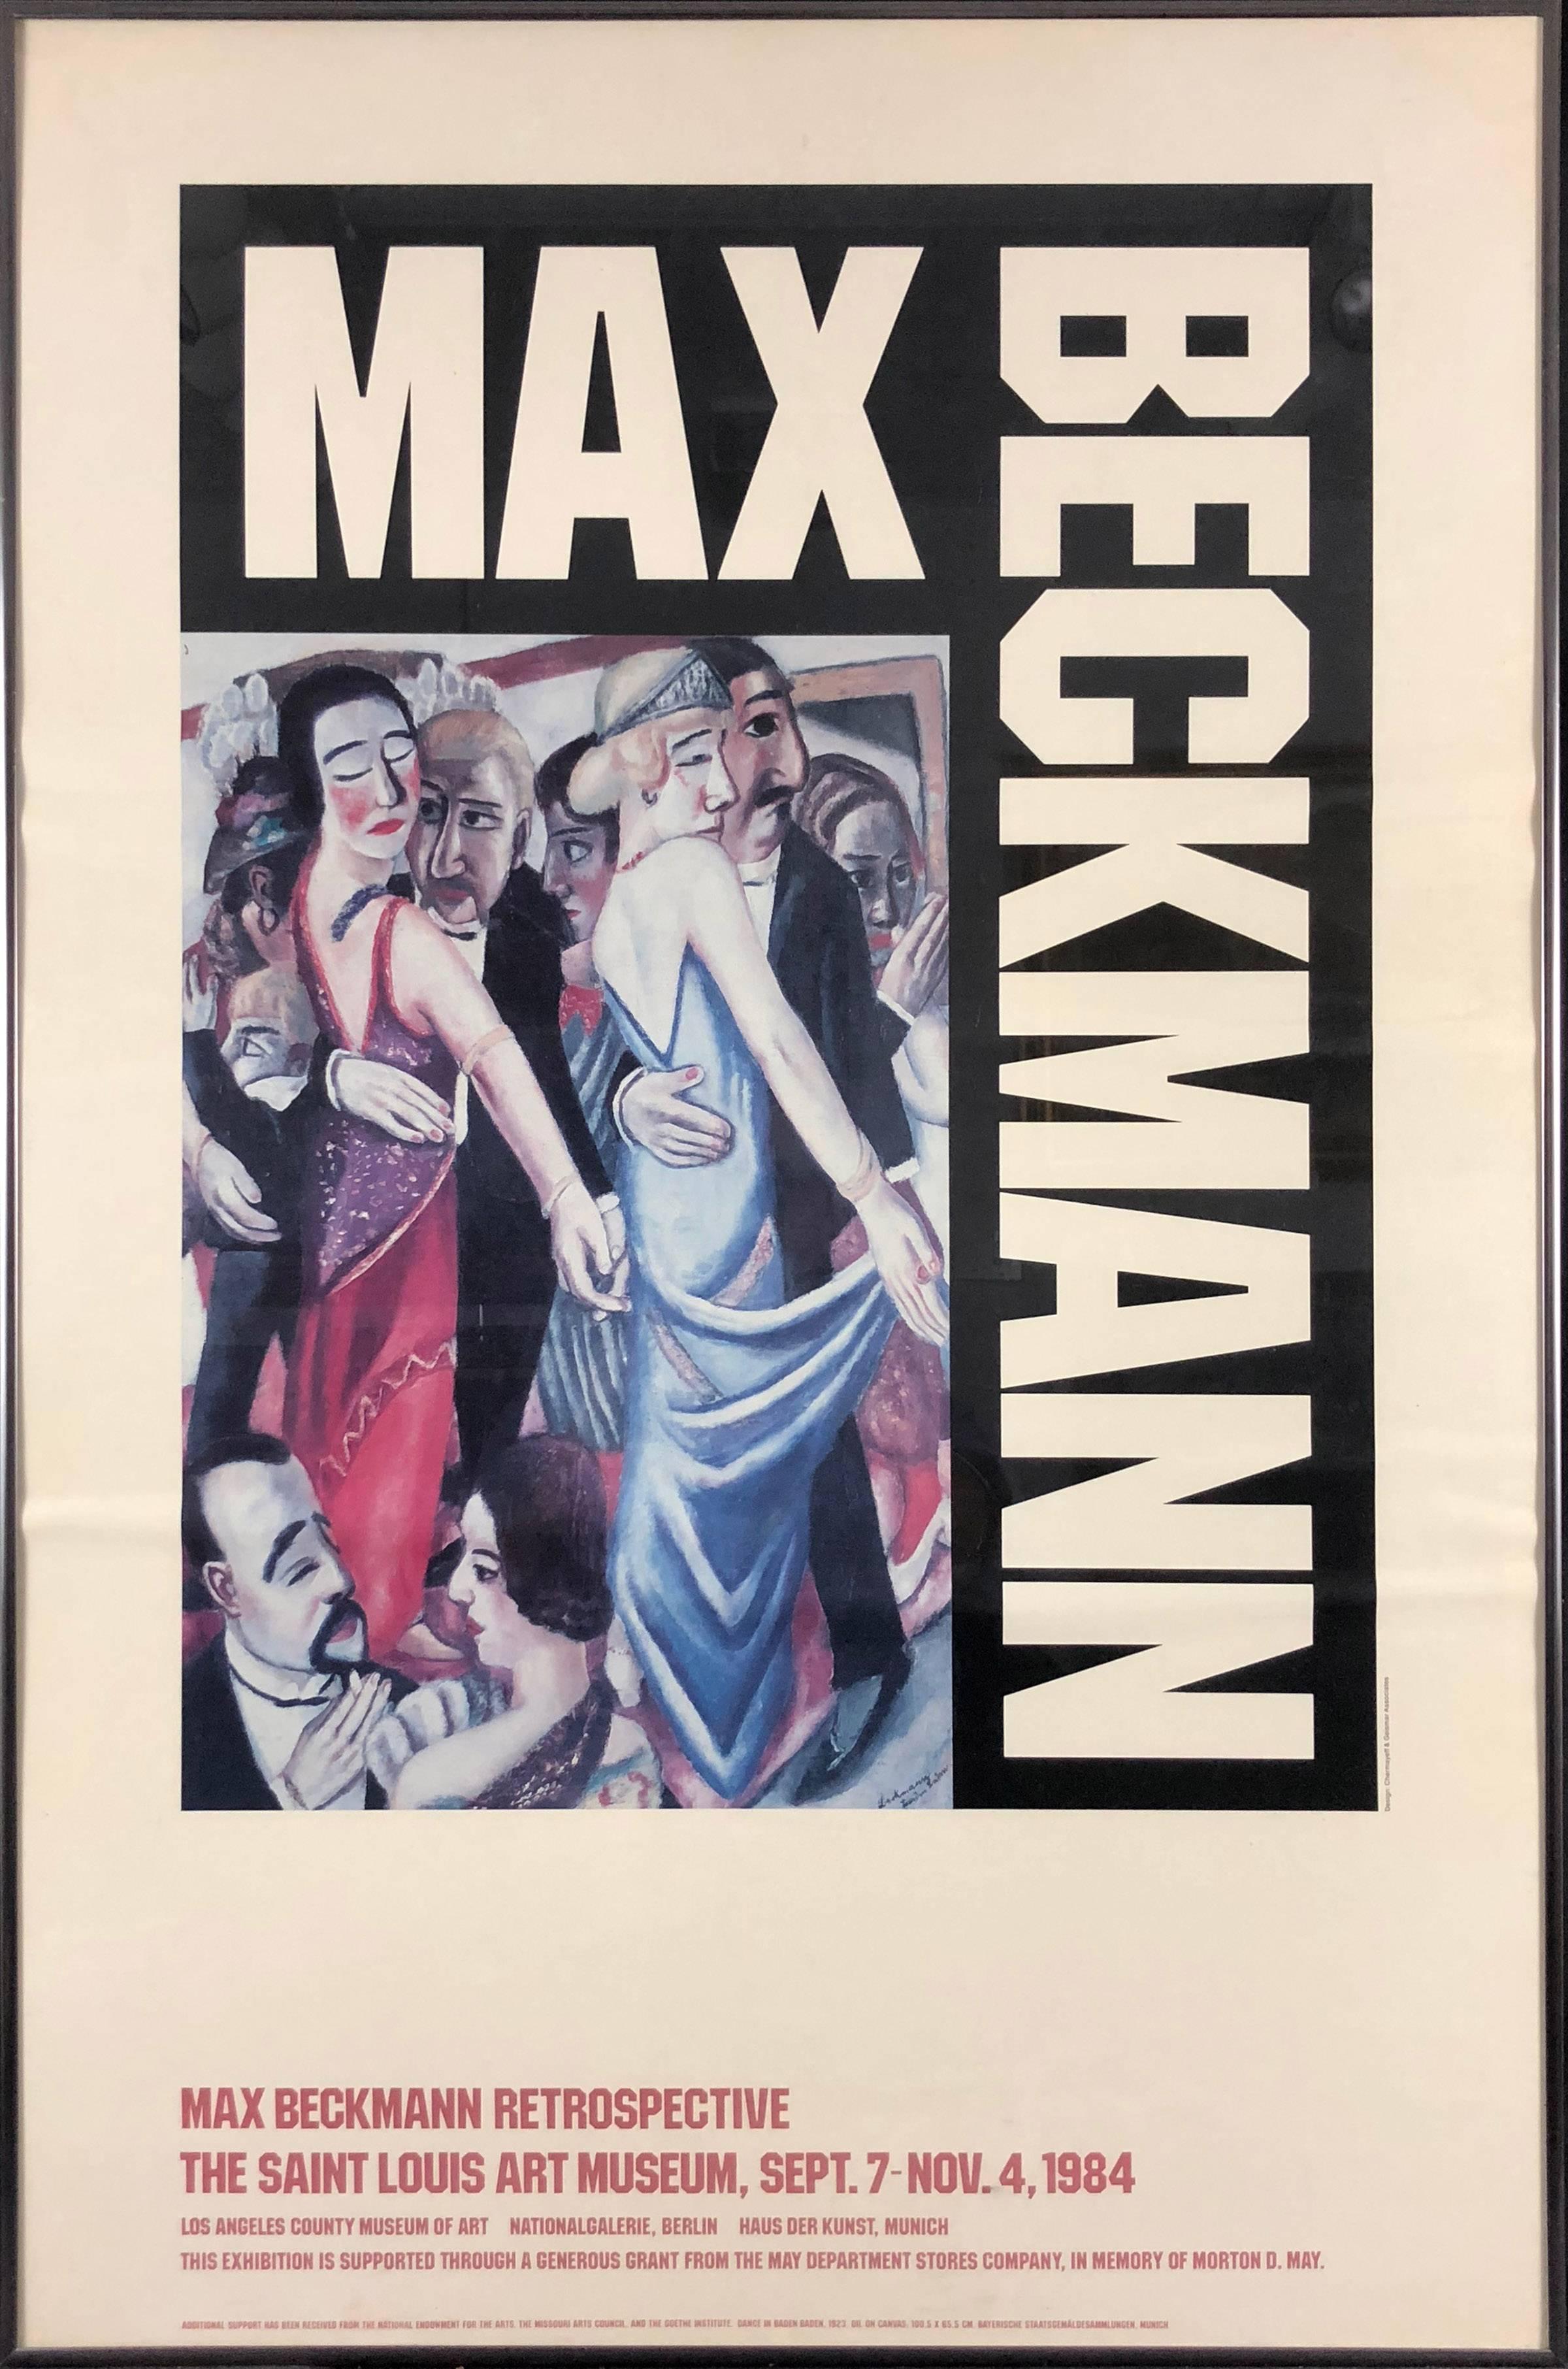 Rétrospective de Max Beckmann (The Saint Louis Art Museum, 7 septembre au 4 novembre 1984)